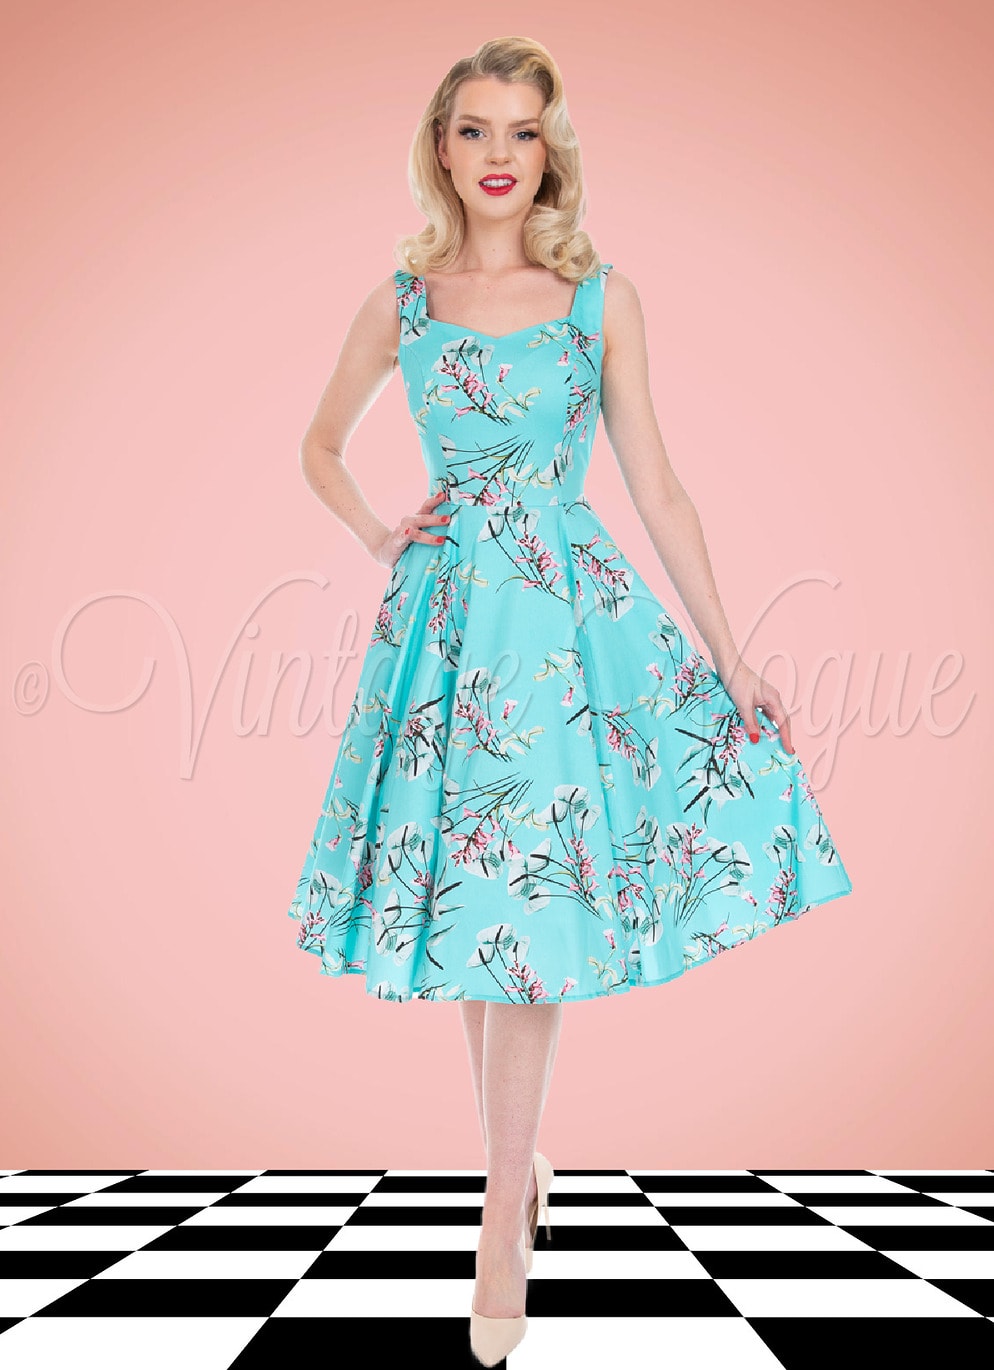 Hearts and Roses 50's Vintage Retro Kleid Sandra Floral Swing Dress in Blau 50er Jahre Petticoat Damenkleid Blumen Rosen Geblümt Hochzeitsgast Sommerkleid